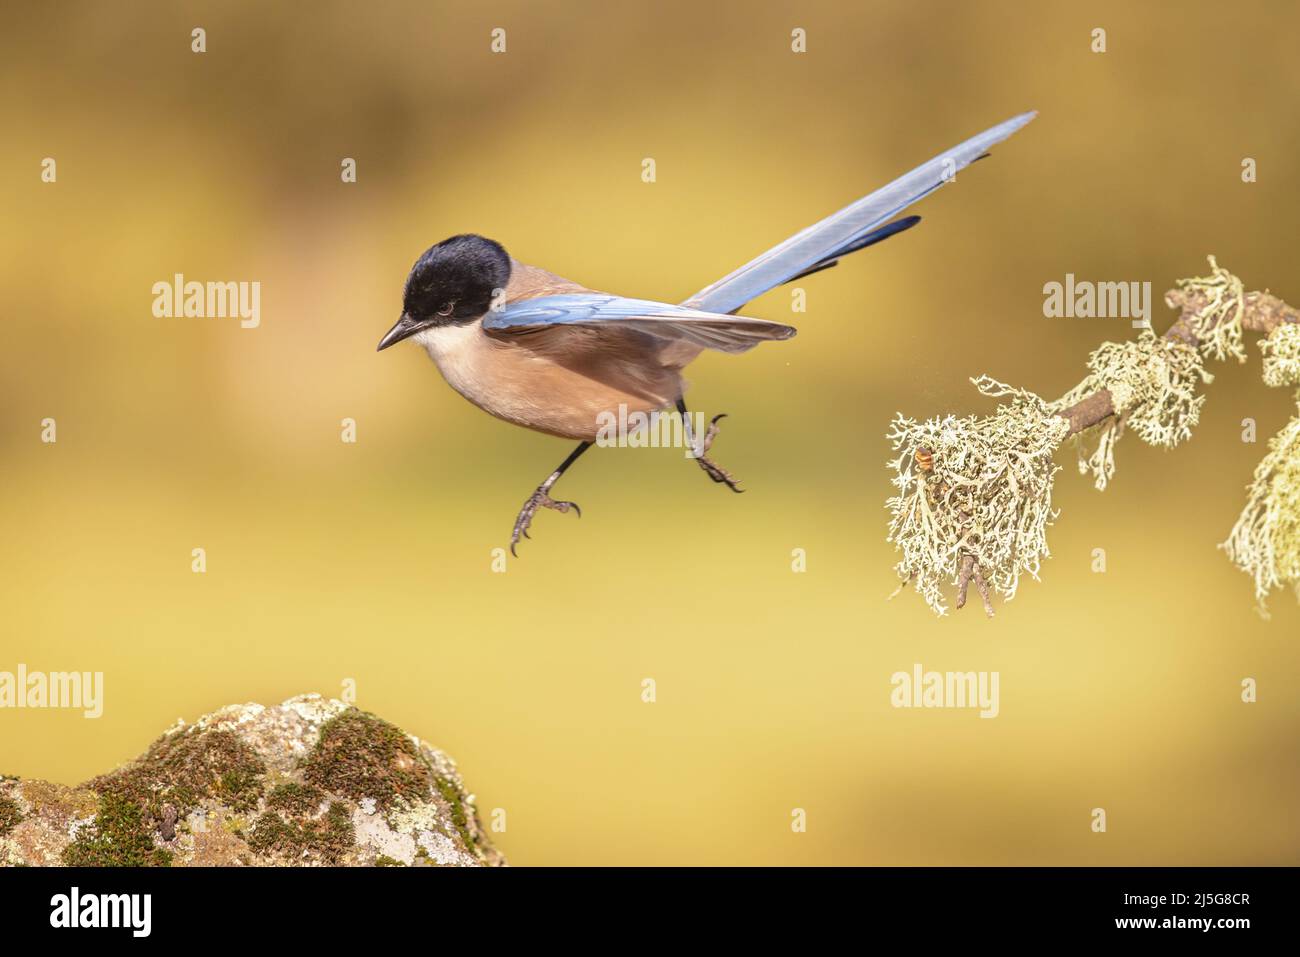 Cyanopica cooki es una especie de ave de la familia de los cuervo. Pájaro volando sobre un fondo brillante en Extremadura, España. Vida silvestre escena de la naturaleza i Foto de stock